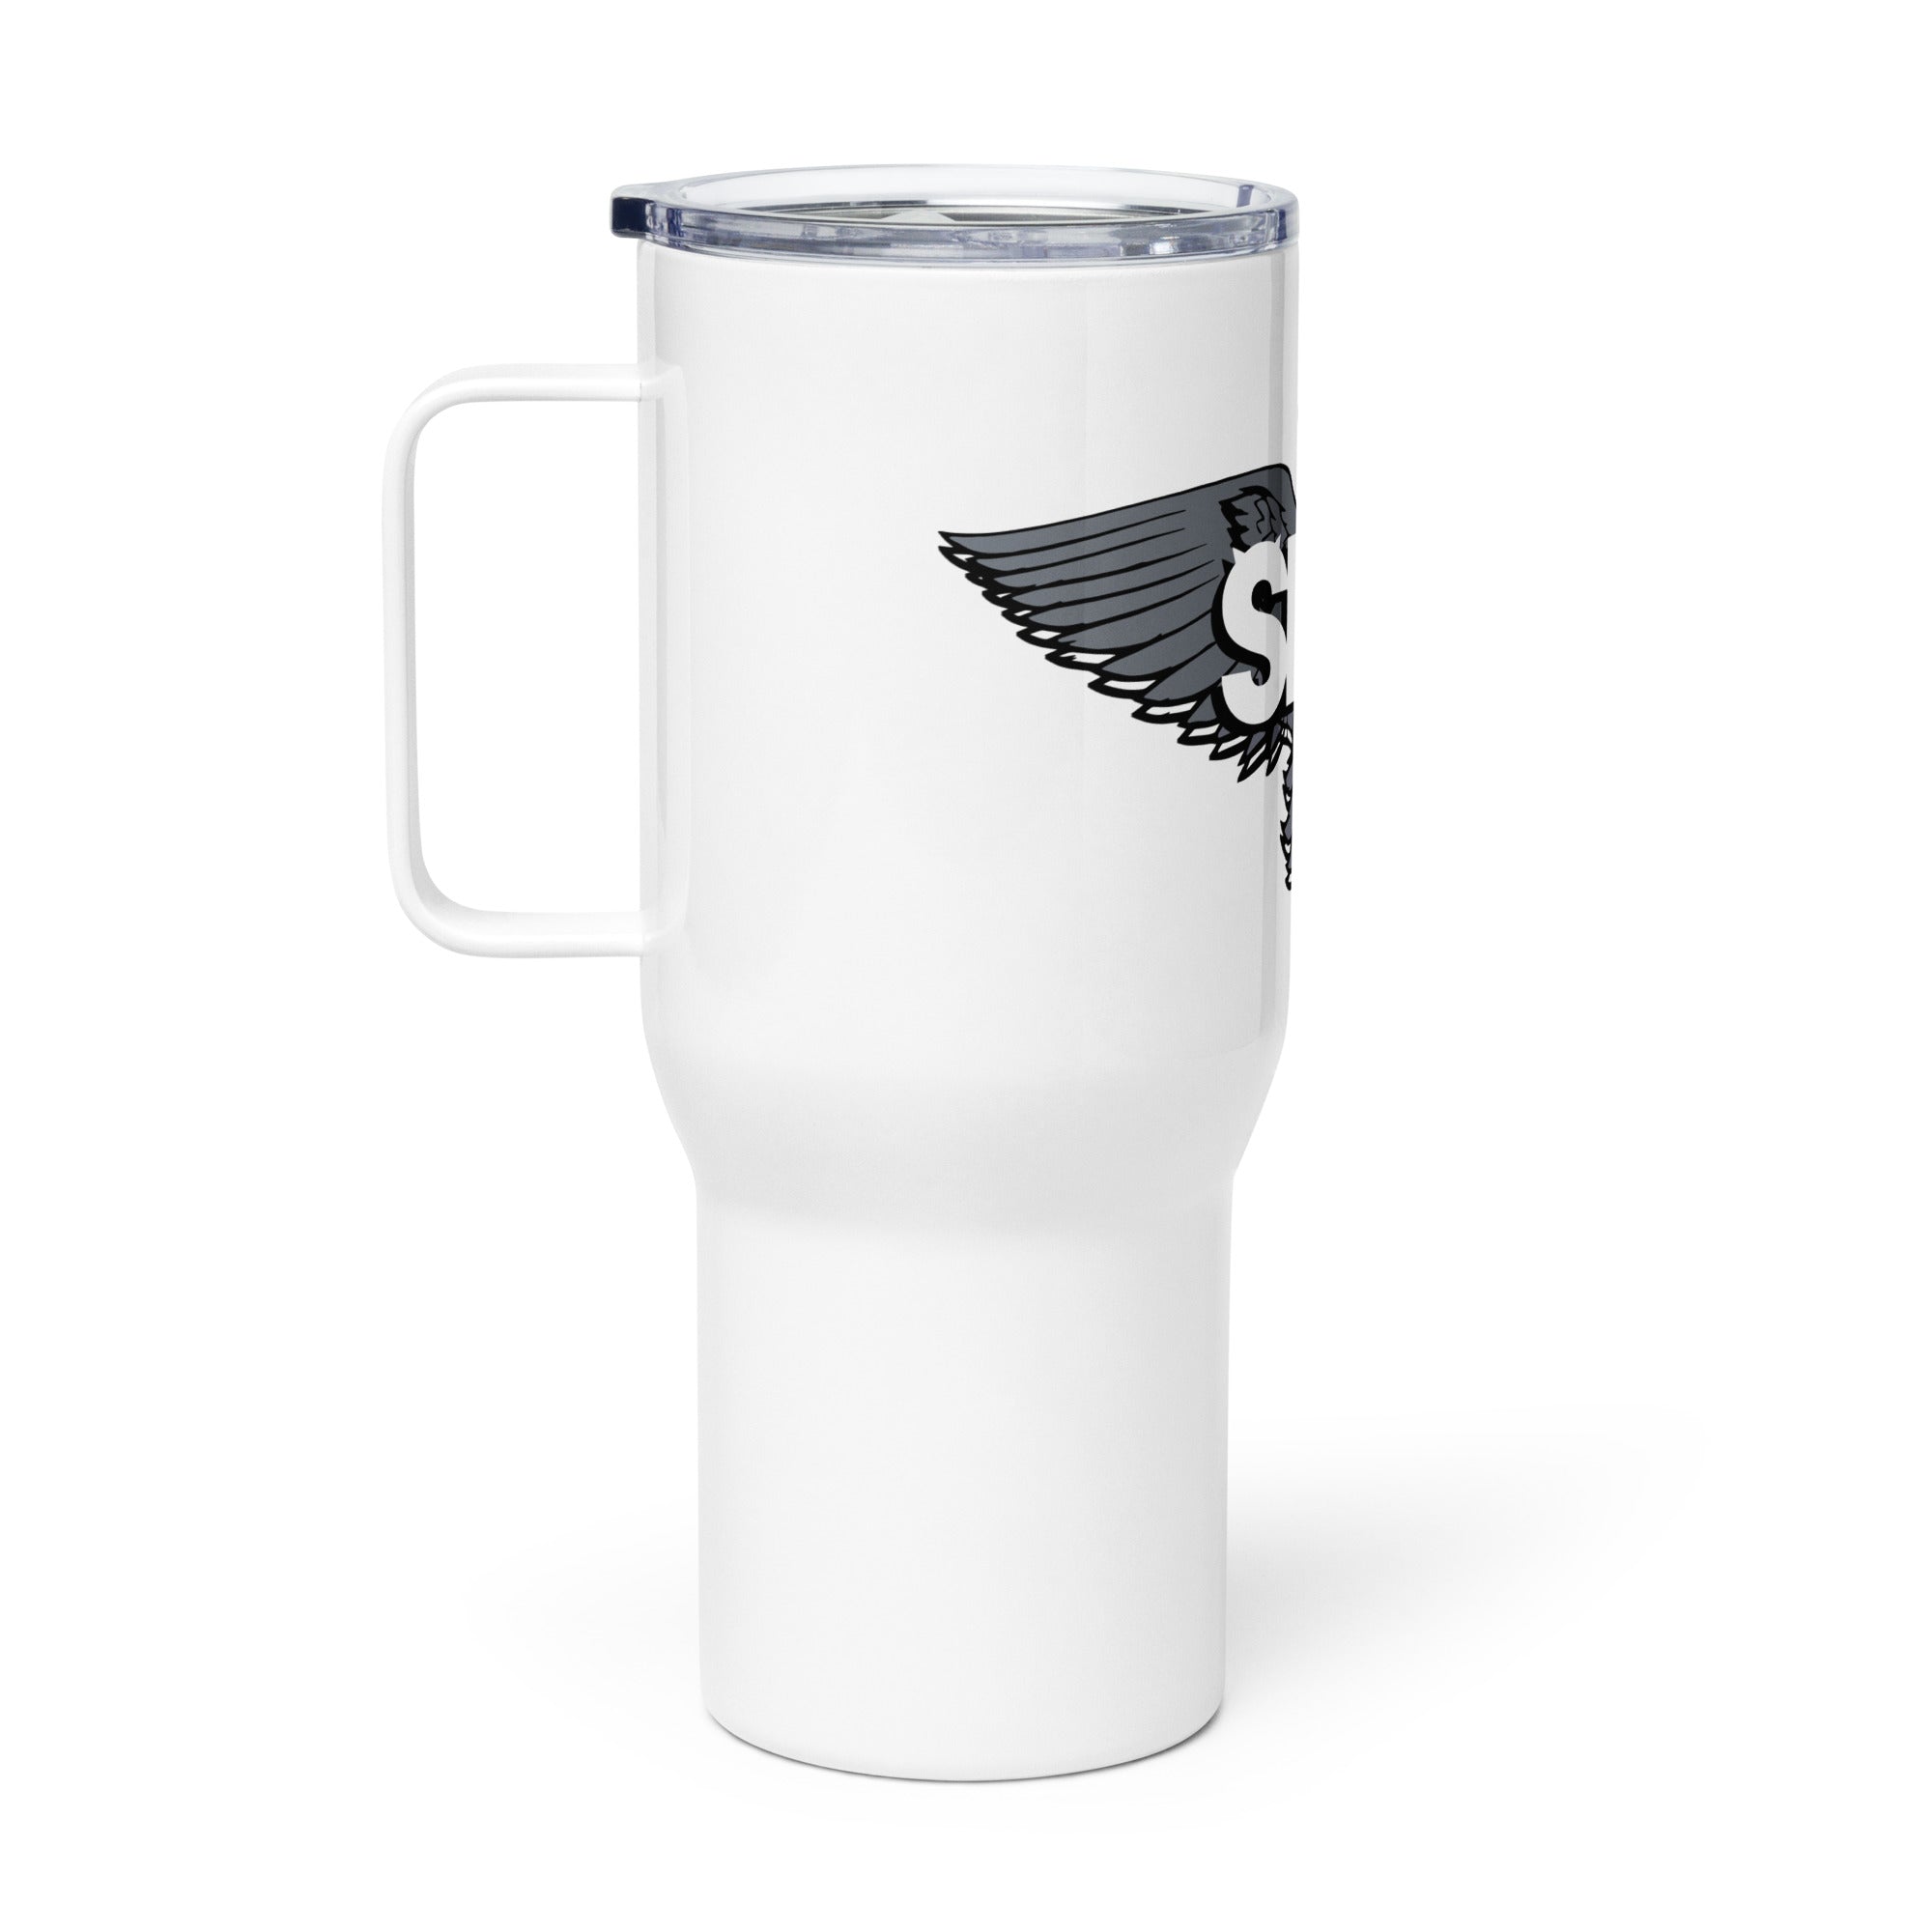 SKM Travel mug with a handle